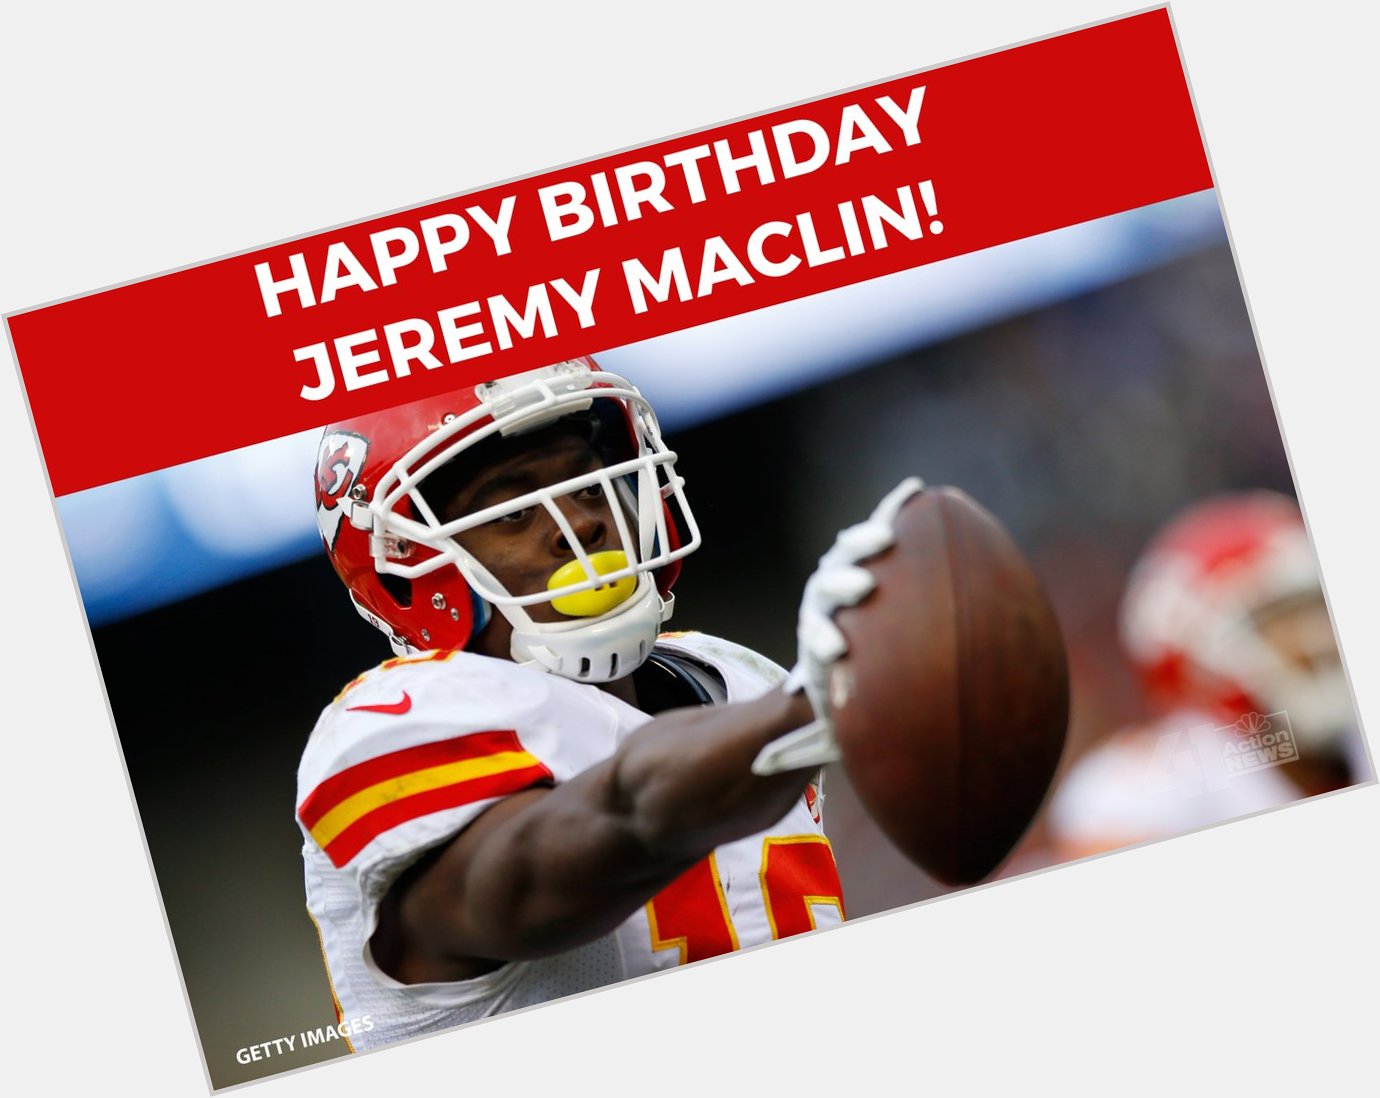 HAPPY BIRTHDAY to player Jeremy Maclin! 